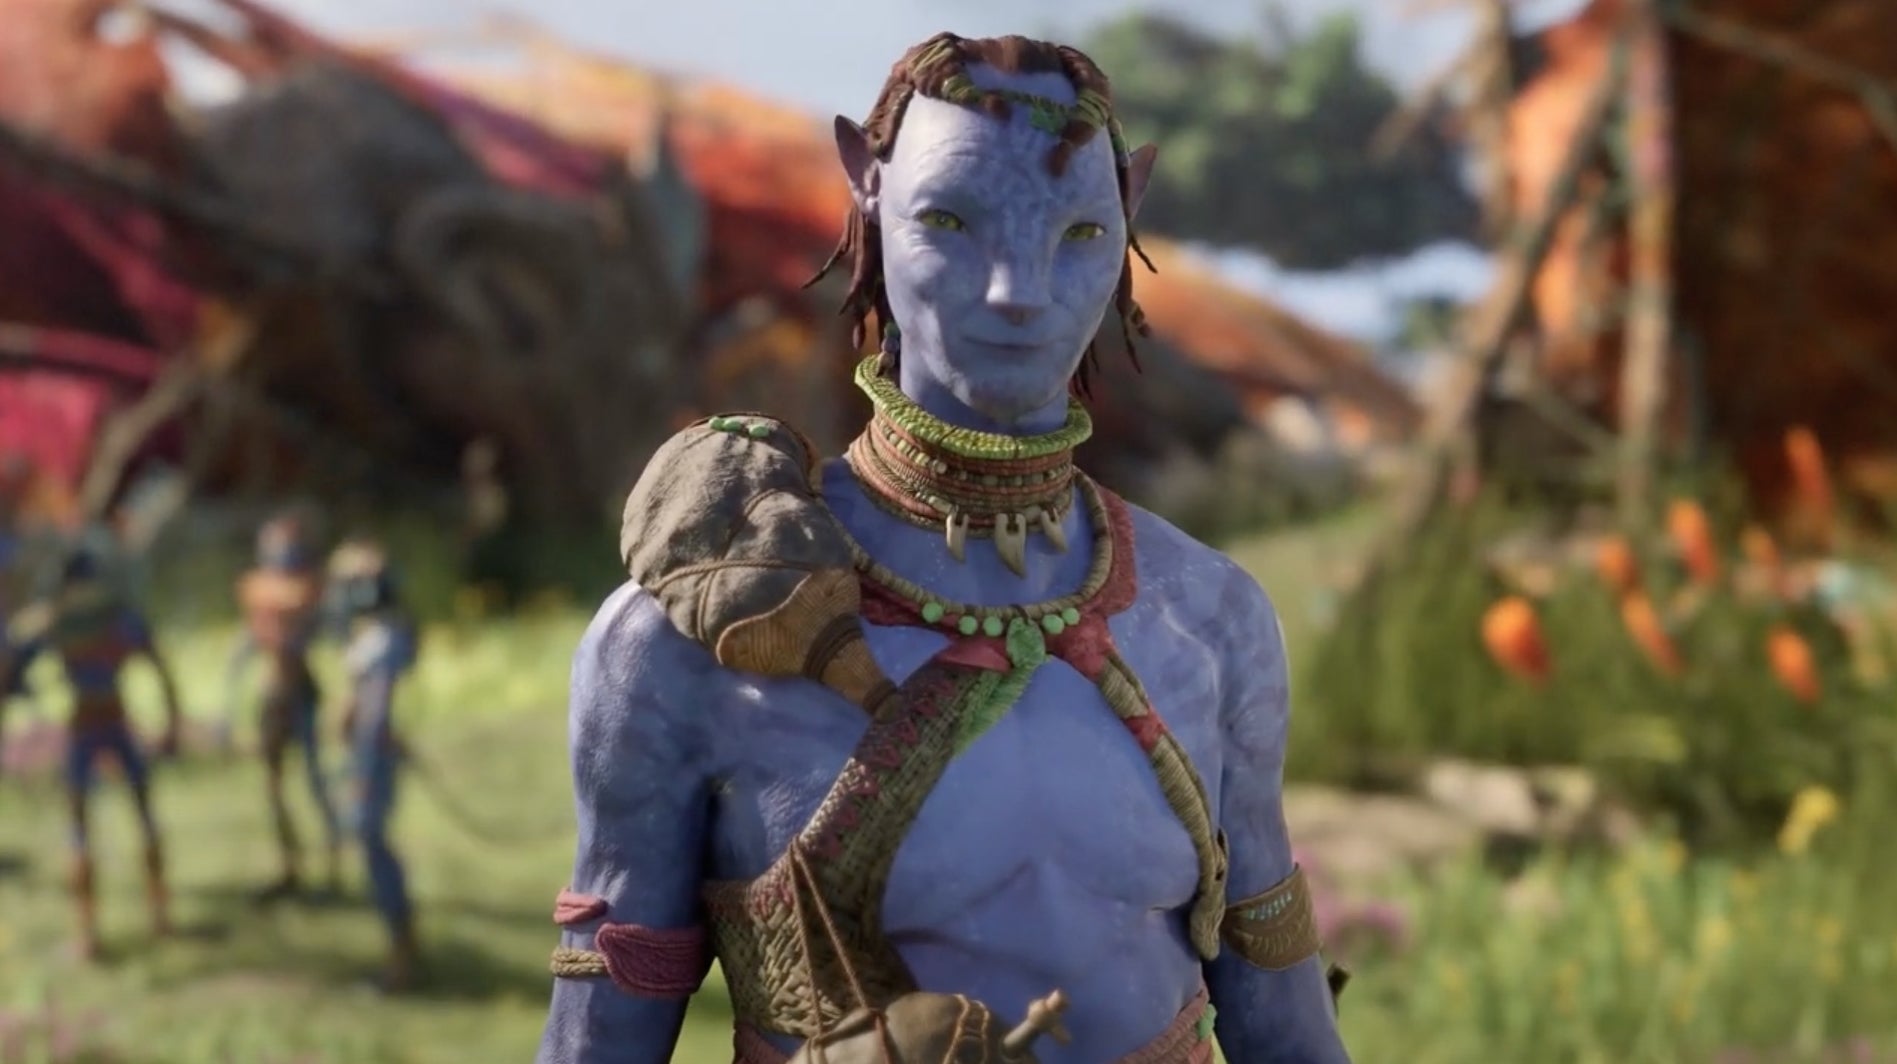 Avatar game đình đám: Avatar game được đánh giá là một trong những thể loại game nhập vai được yêu thích nhất trong thời gian gần đây. Với những cốt truyện hấp dẫn, gameplay đa dạng và đồ họa tuyệt đẹp, Avatar game đã thu hút được sự quan tâm của hàng triệu game thủ trên toàn thế giới.